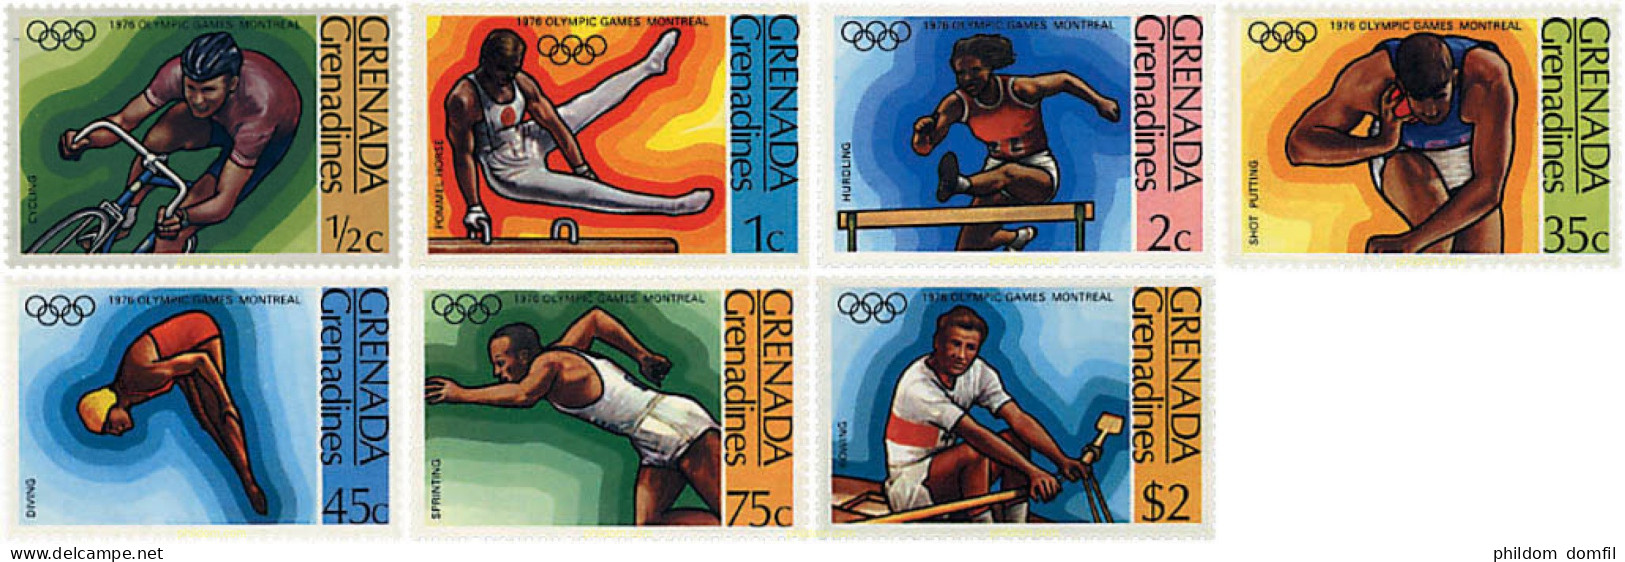 42195 MNH GRANADA GRANADINAS 1976 21 JUEGOS OLIMPICOS VERANO MONTREAL 1976 - Grenada (1974-...)